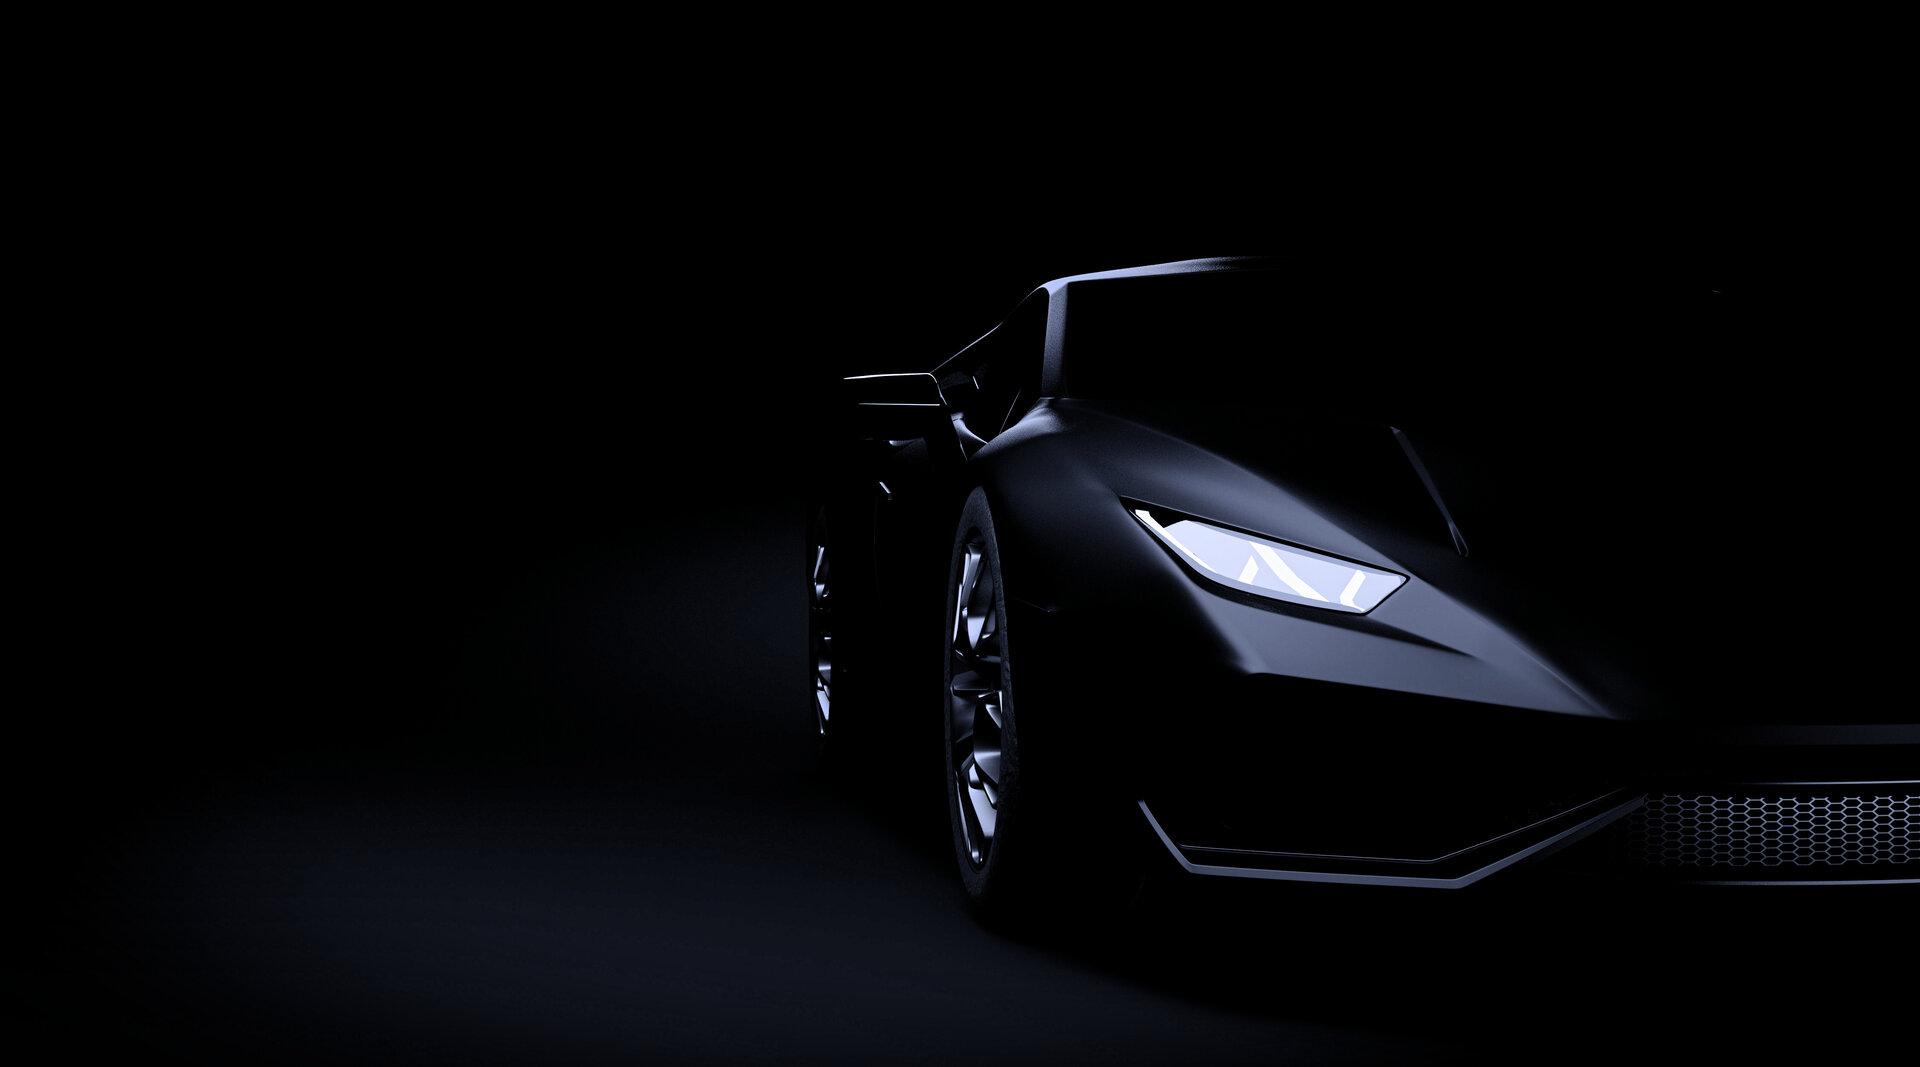 Schwarzer Sportwagen (Lamborghini) auf dunklem Hintergrund.